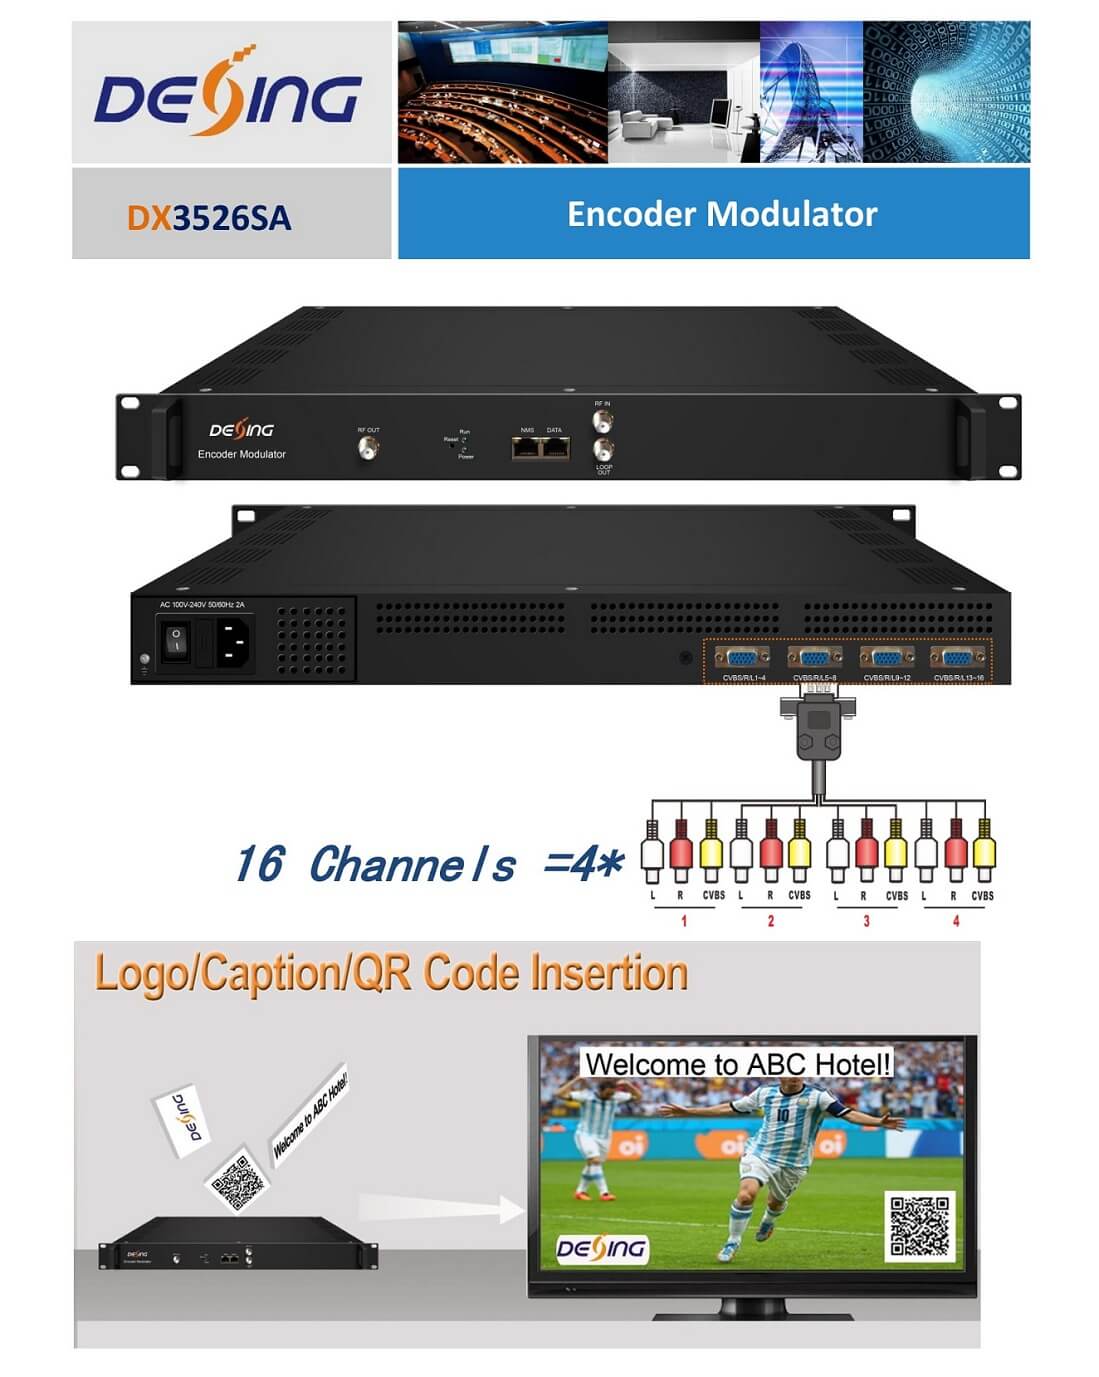 DX3526SA_DVB-T_Encoder_Modulator_1